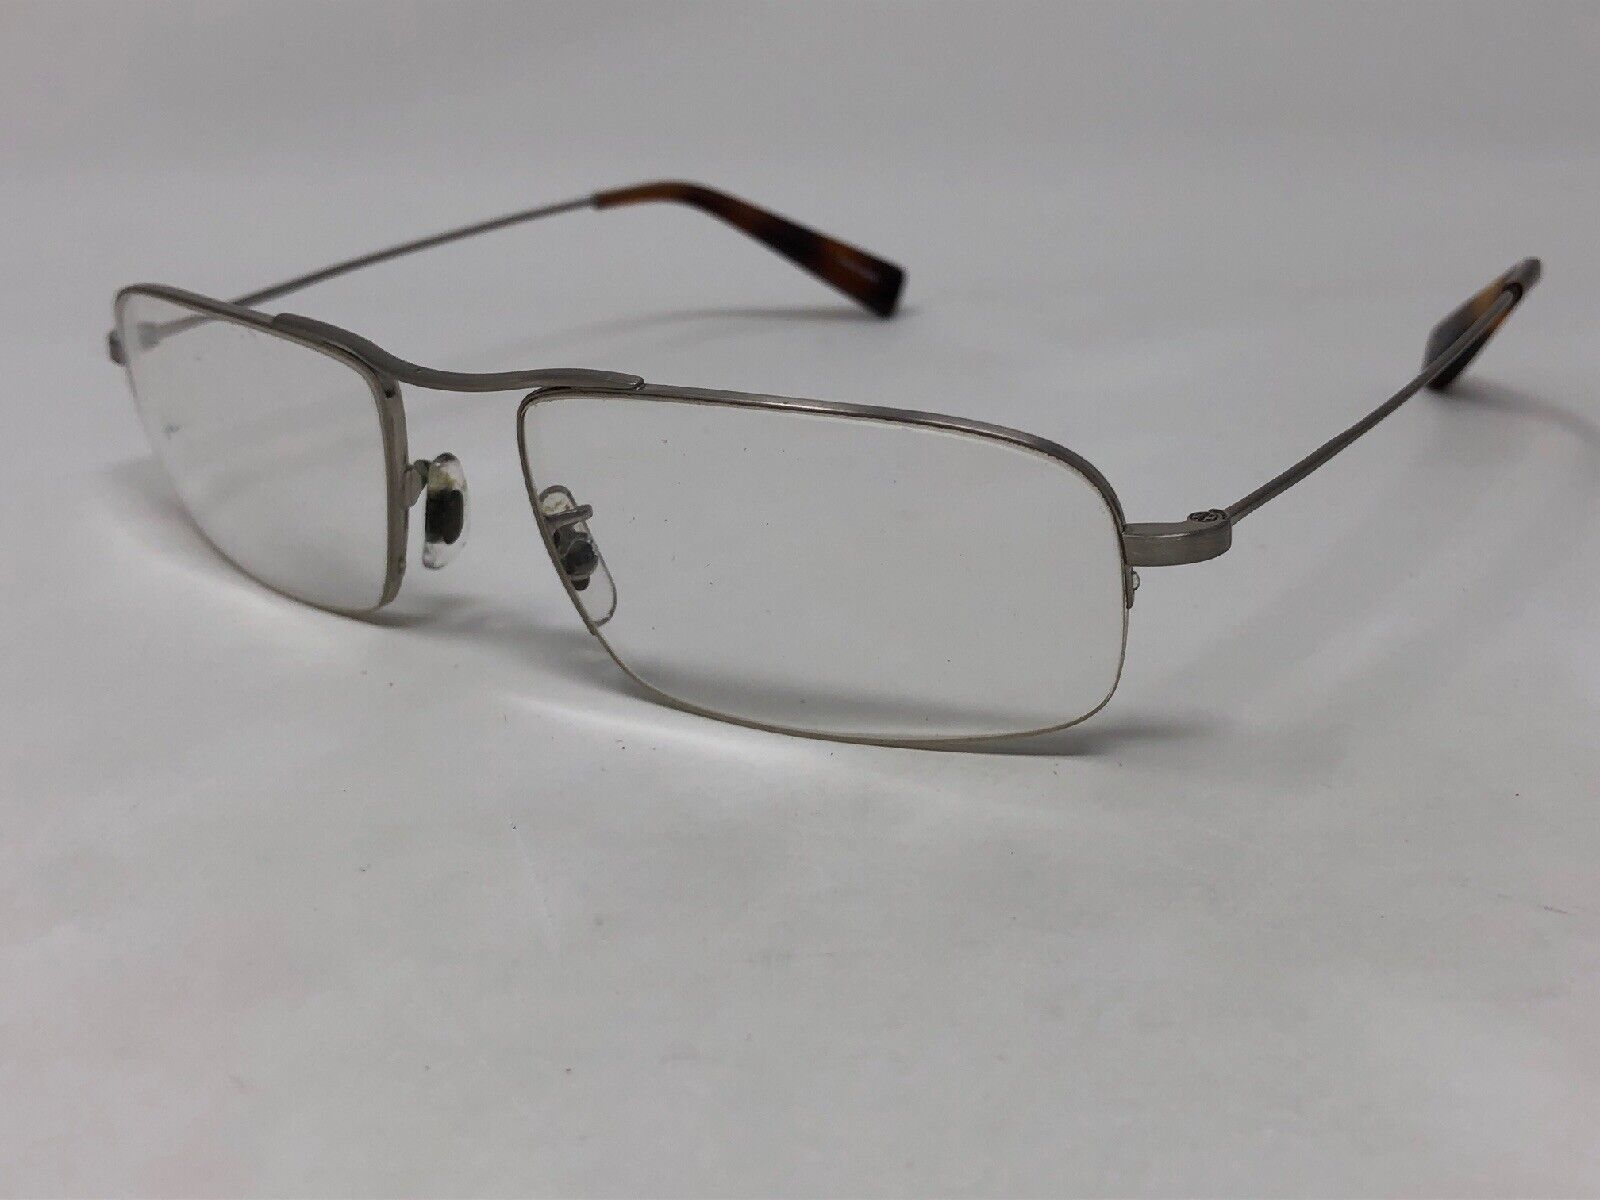 OLIVER PEOPLES “REXFORD” Eyeglasses Frame Japan 53-17-140 Silver/Tortoise TL48